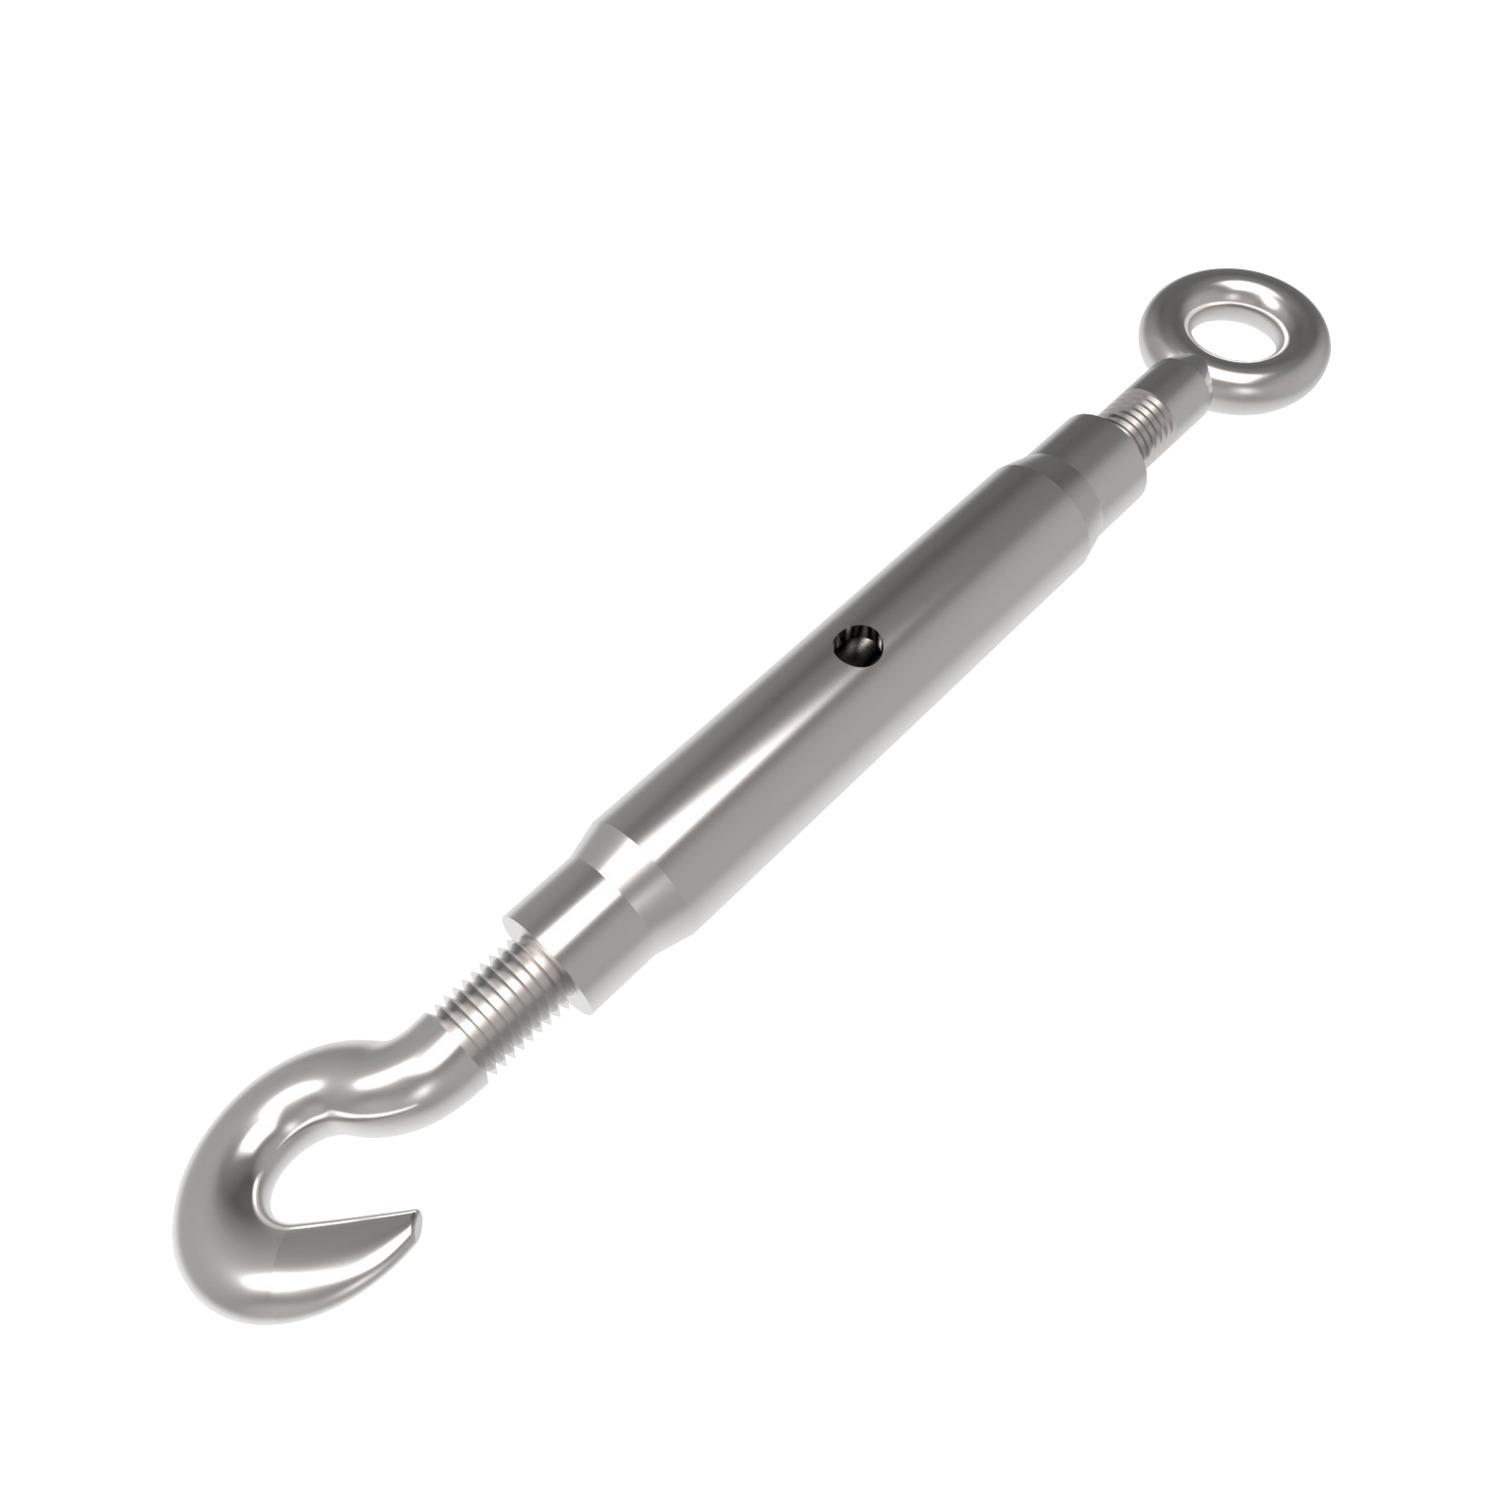 Product R3812, Hook & Eye Pipe Body Turnbuckles steel / 